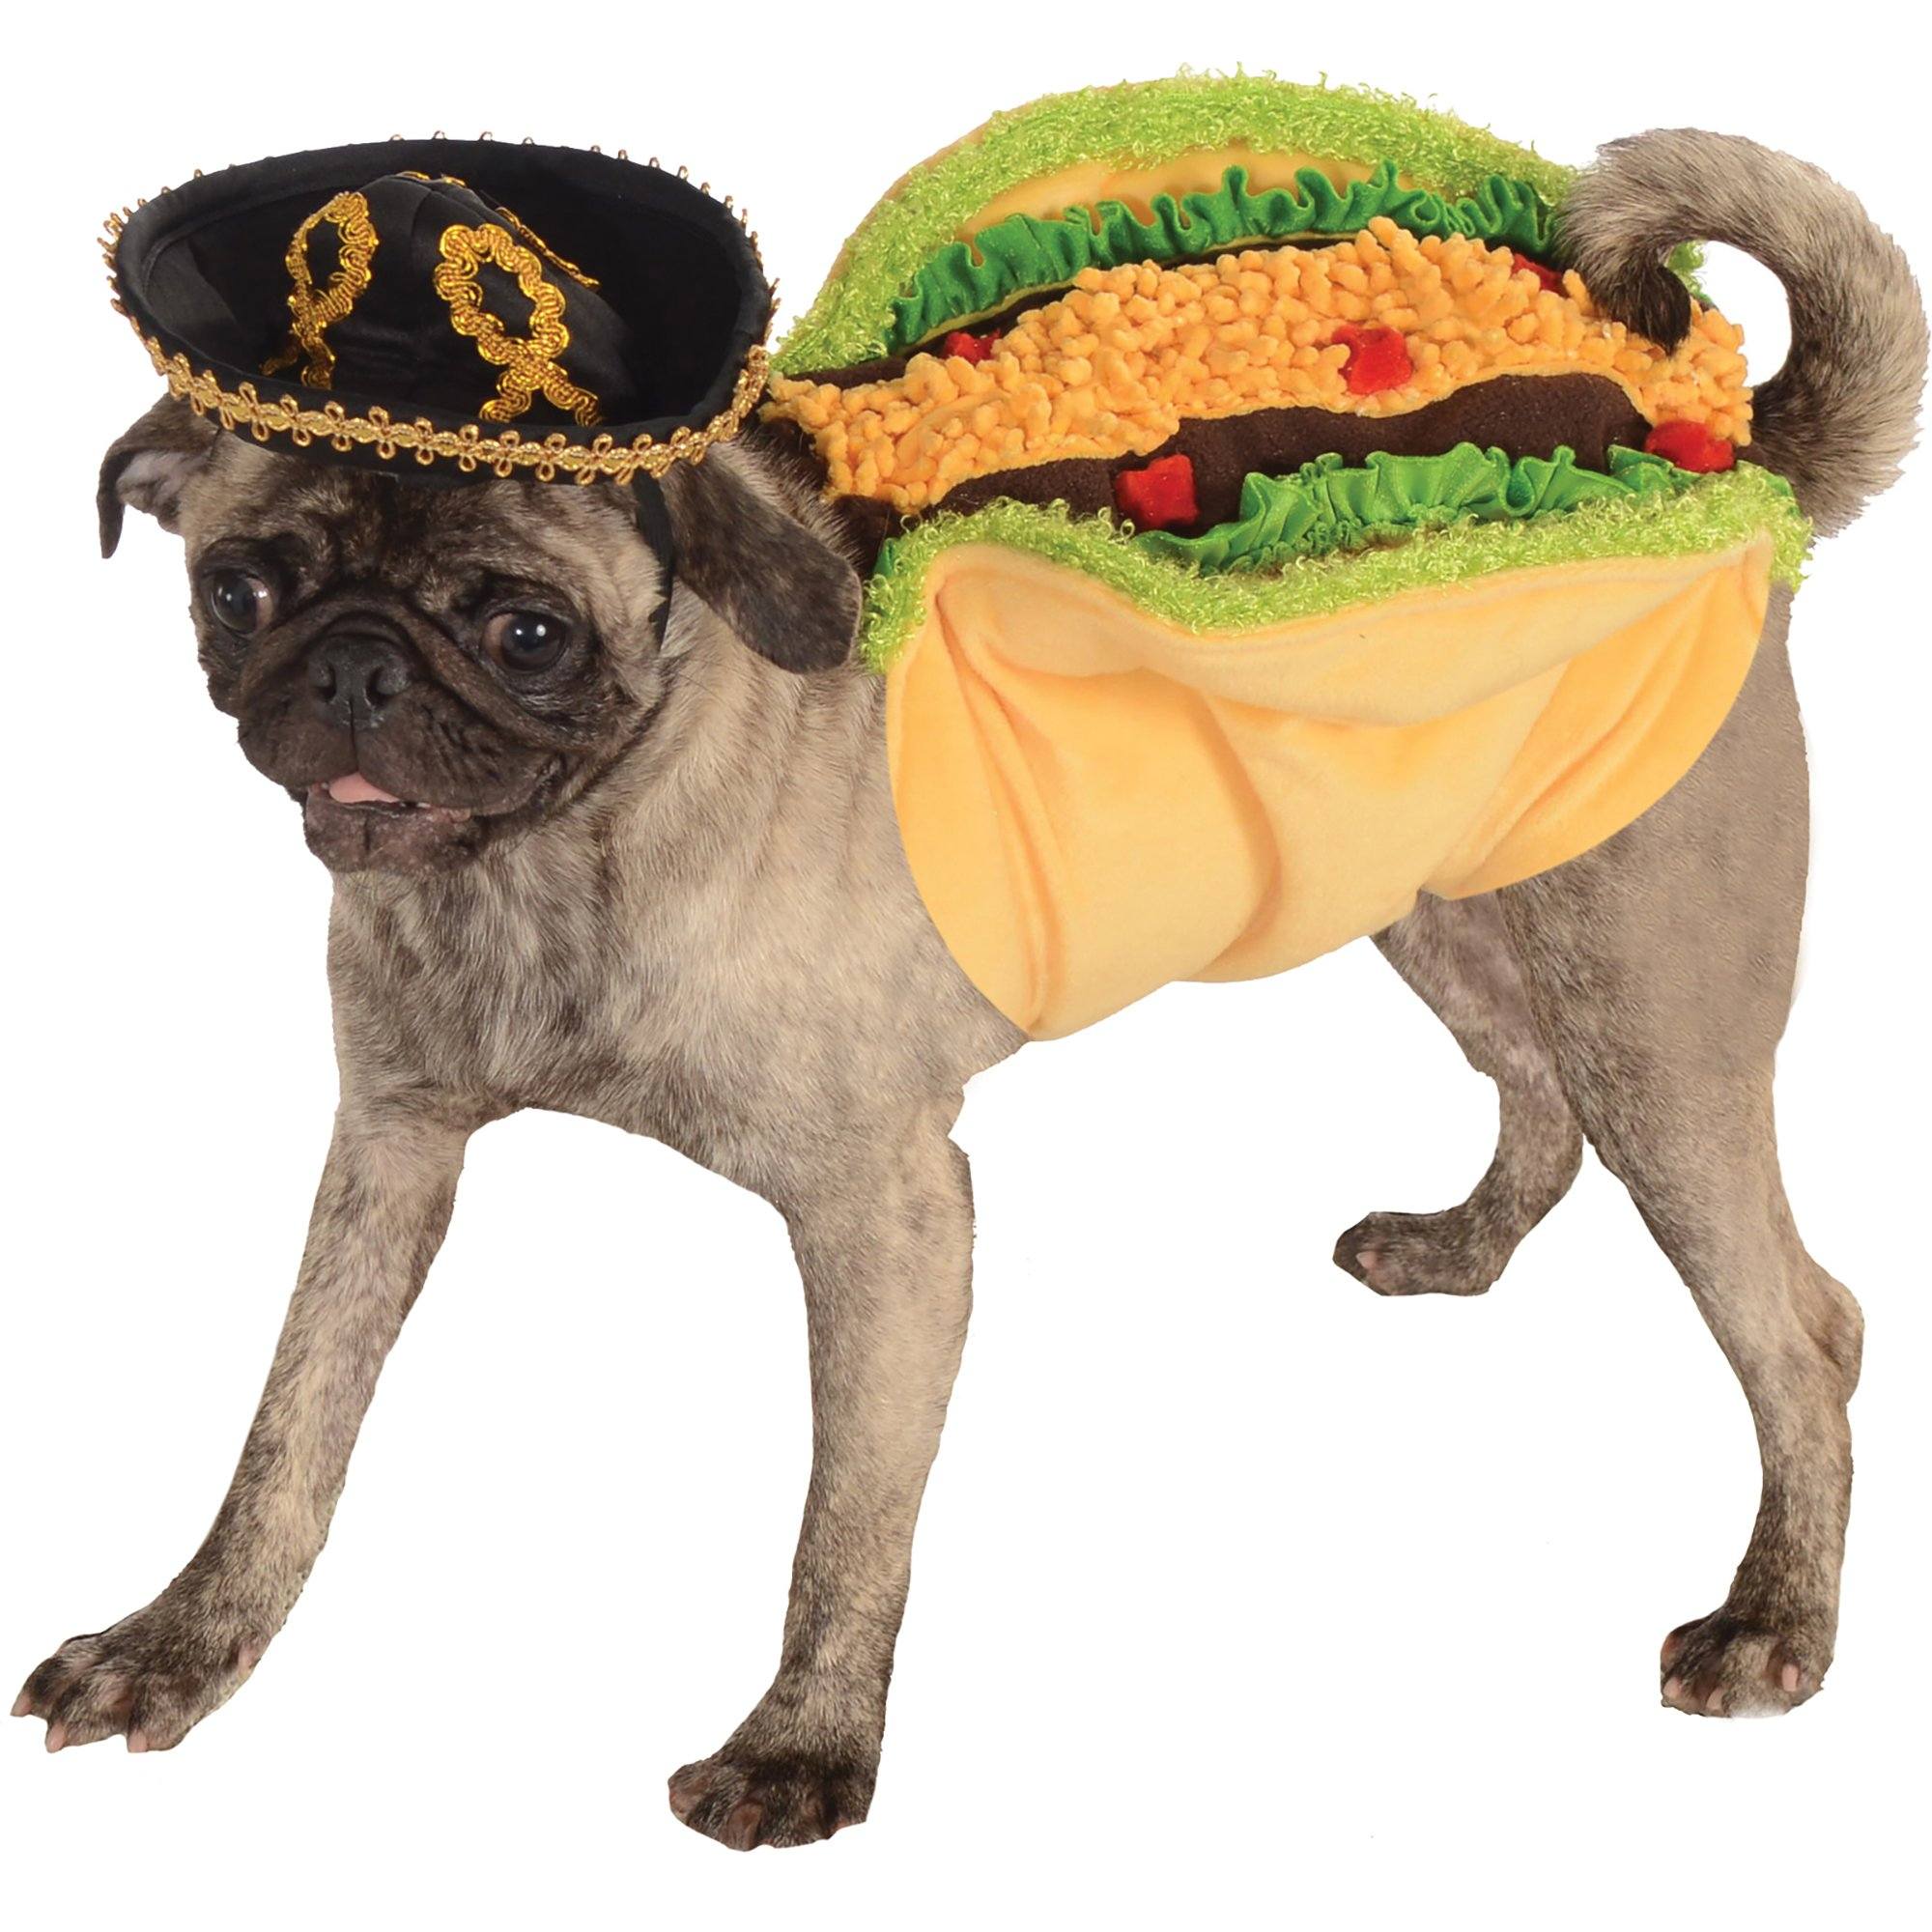 Taco Pet Costume - M